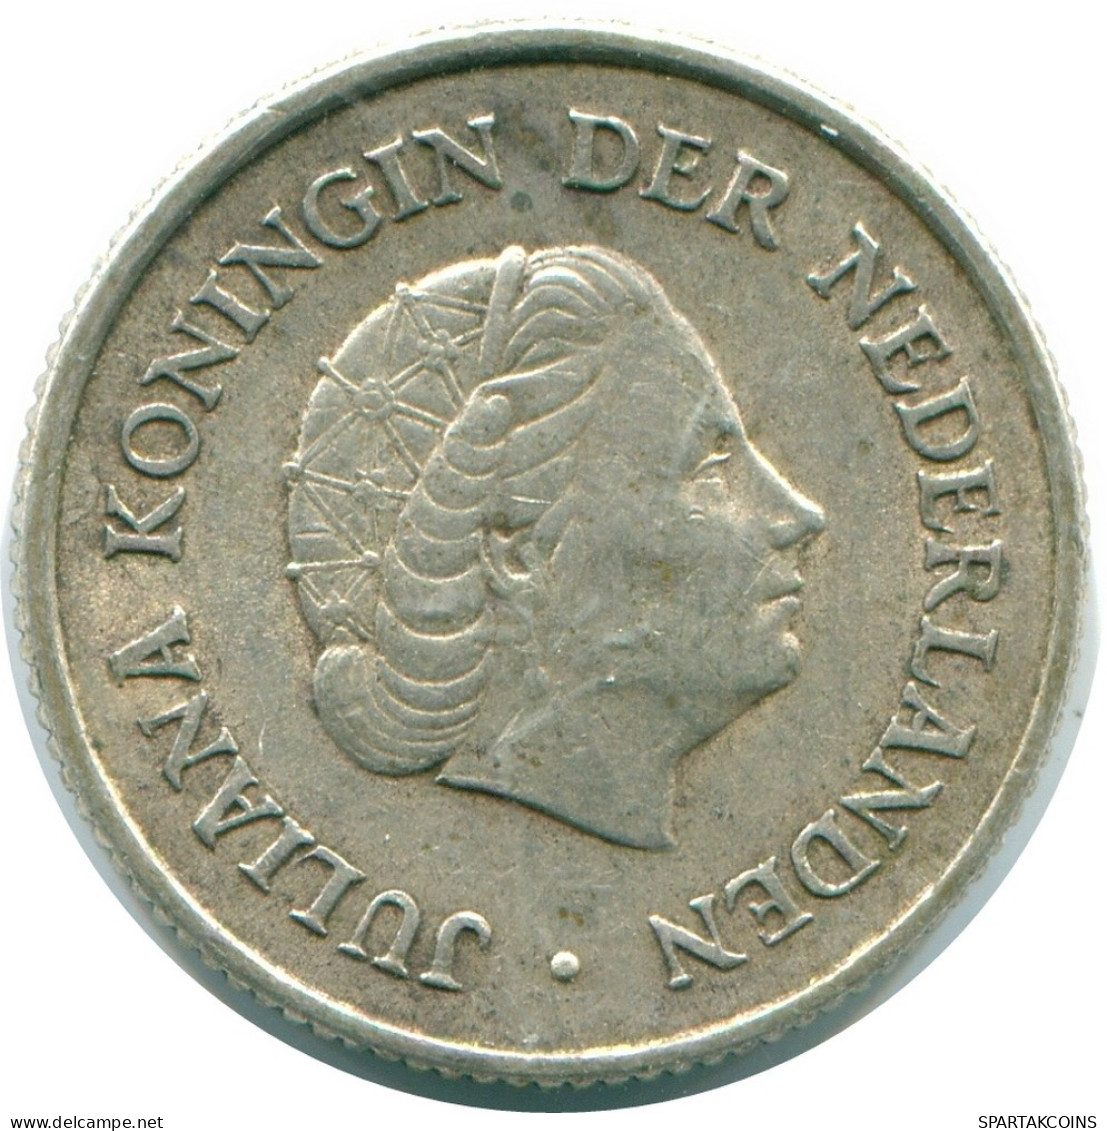 1/4 GULDEN 1965 NIEDERLÄNDISCHE ANTILLEN SILBER Koloniale Münze #NL11331.4.D.A - Niederländische Antillen